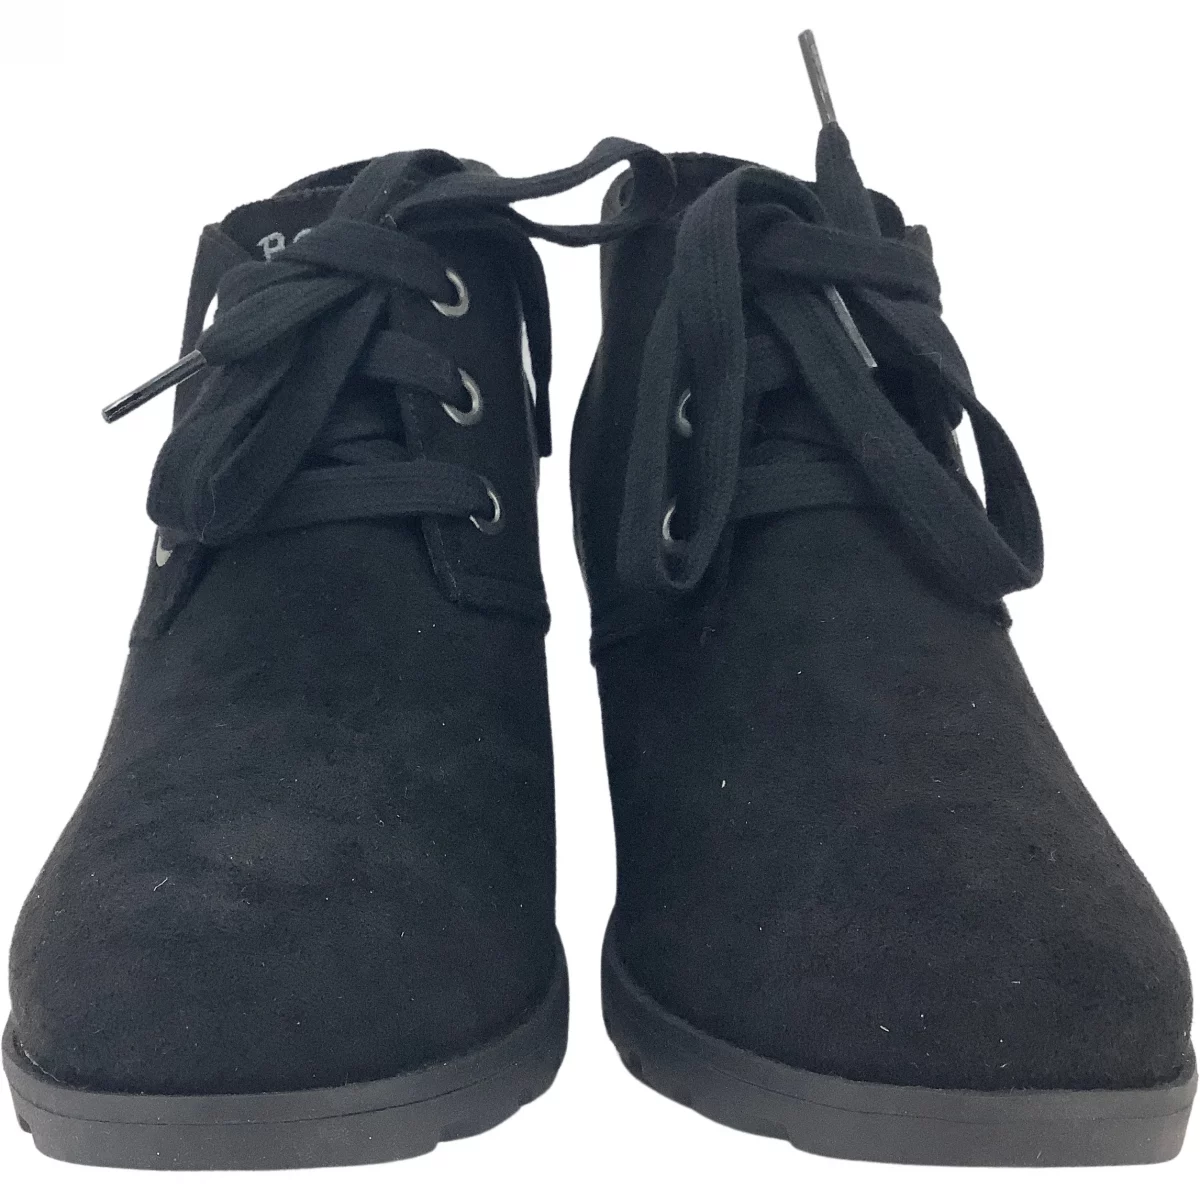 Bobs Women's Heeled Shoes / Black / 3" Heel / Wedge Heel / Size 7.5